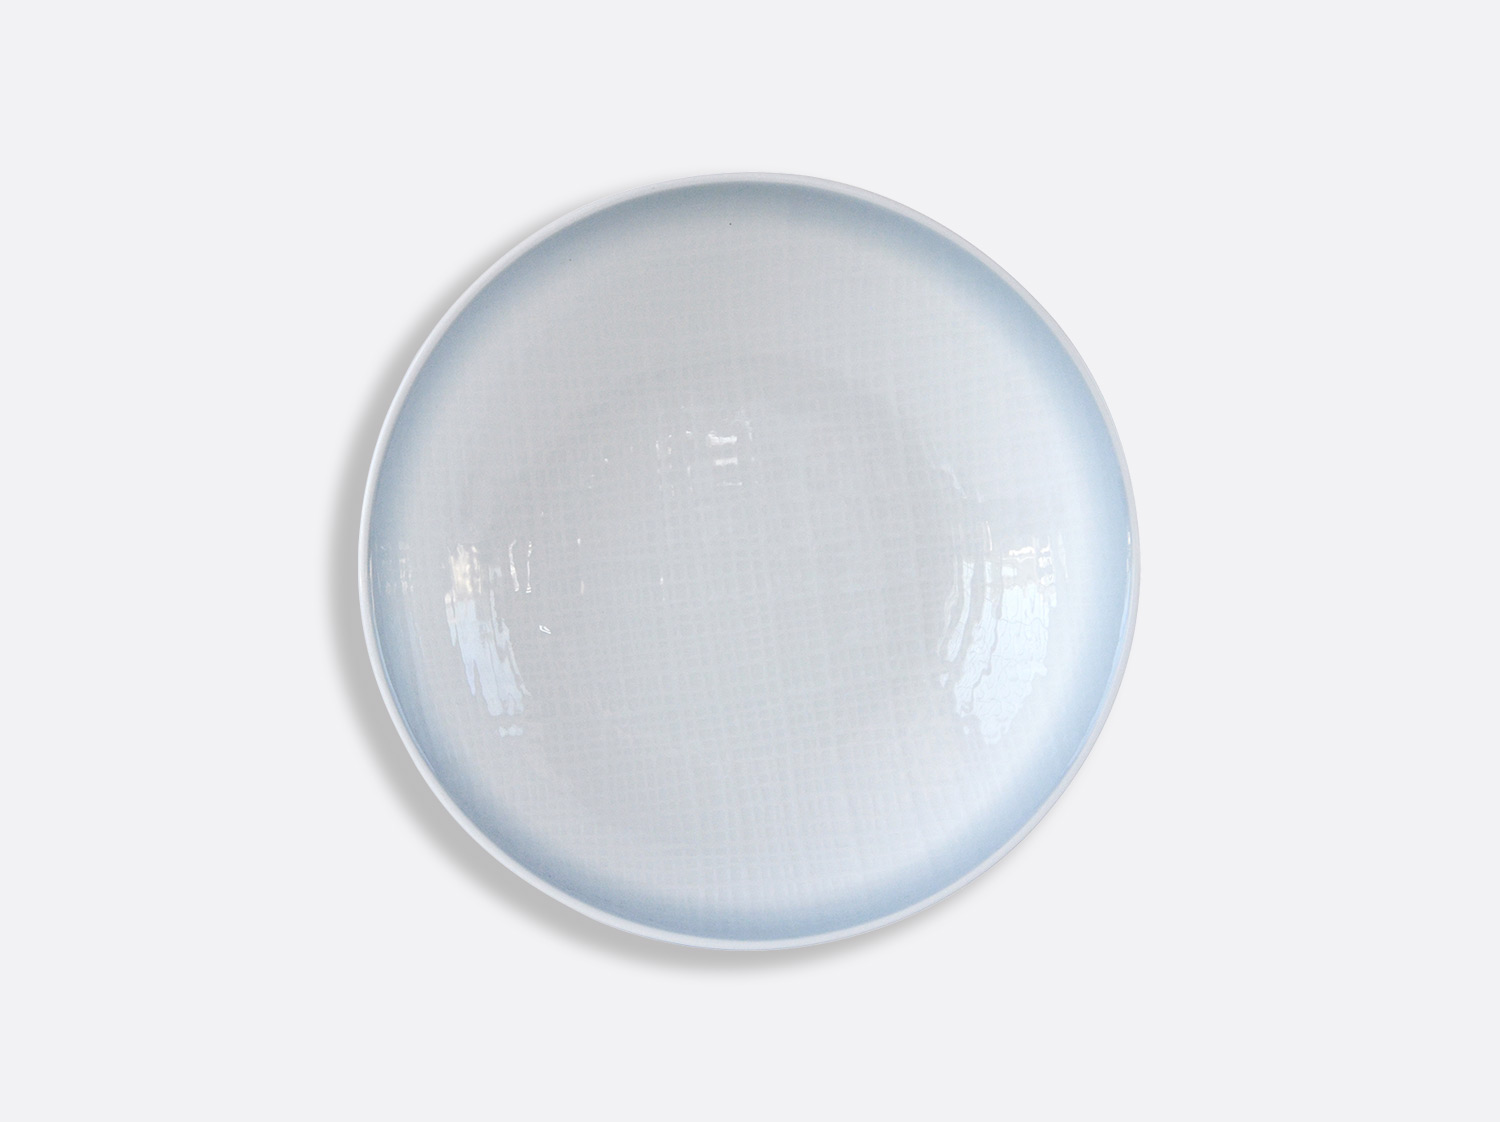 Assiette creuse calotte 19 cm en porcelaine de la collection Eclipse Bernardaud